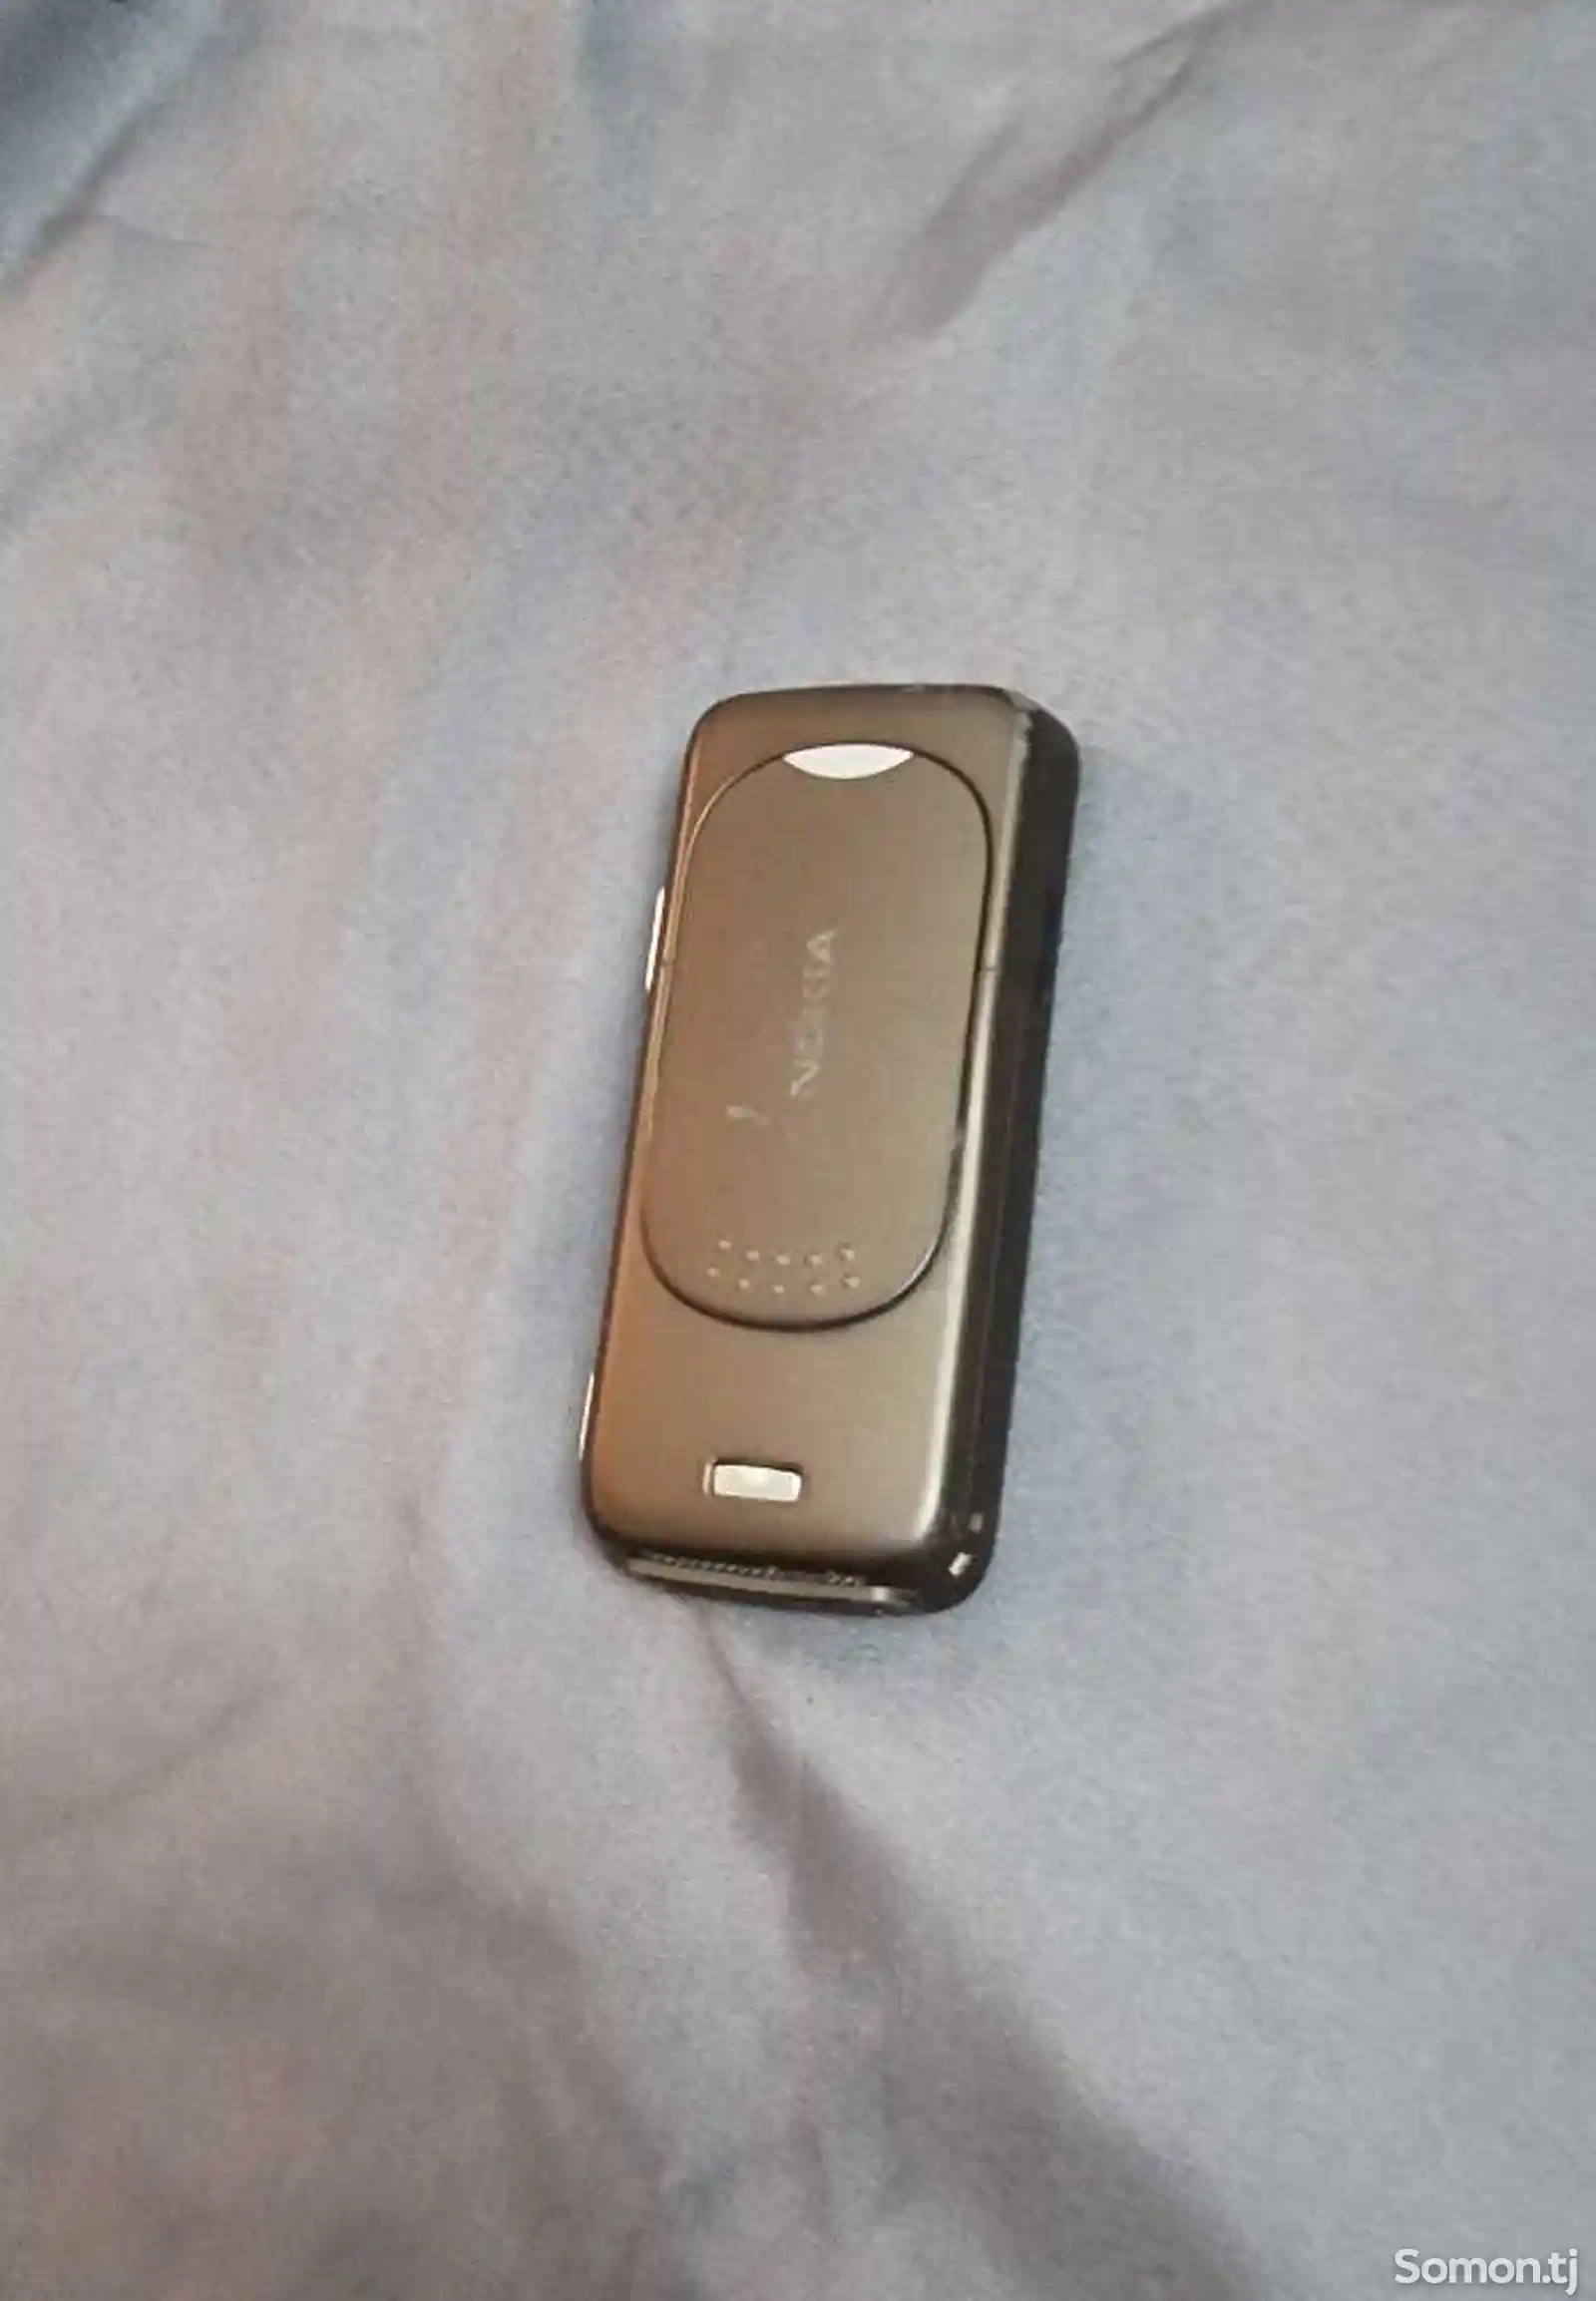 Nokia N73-4